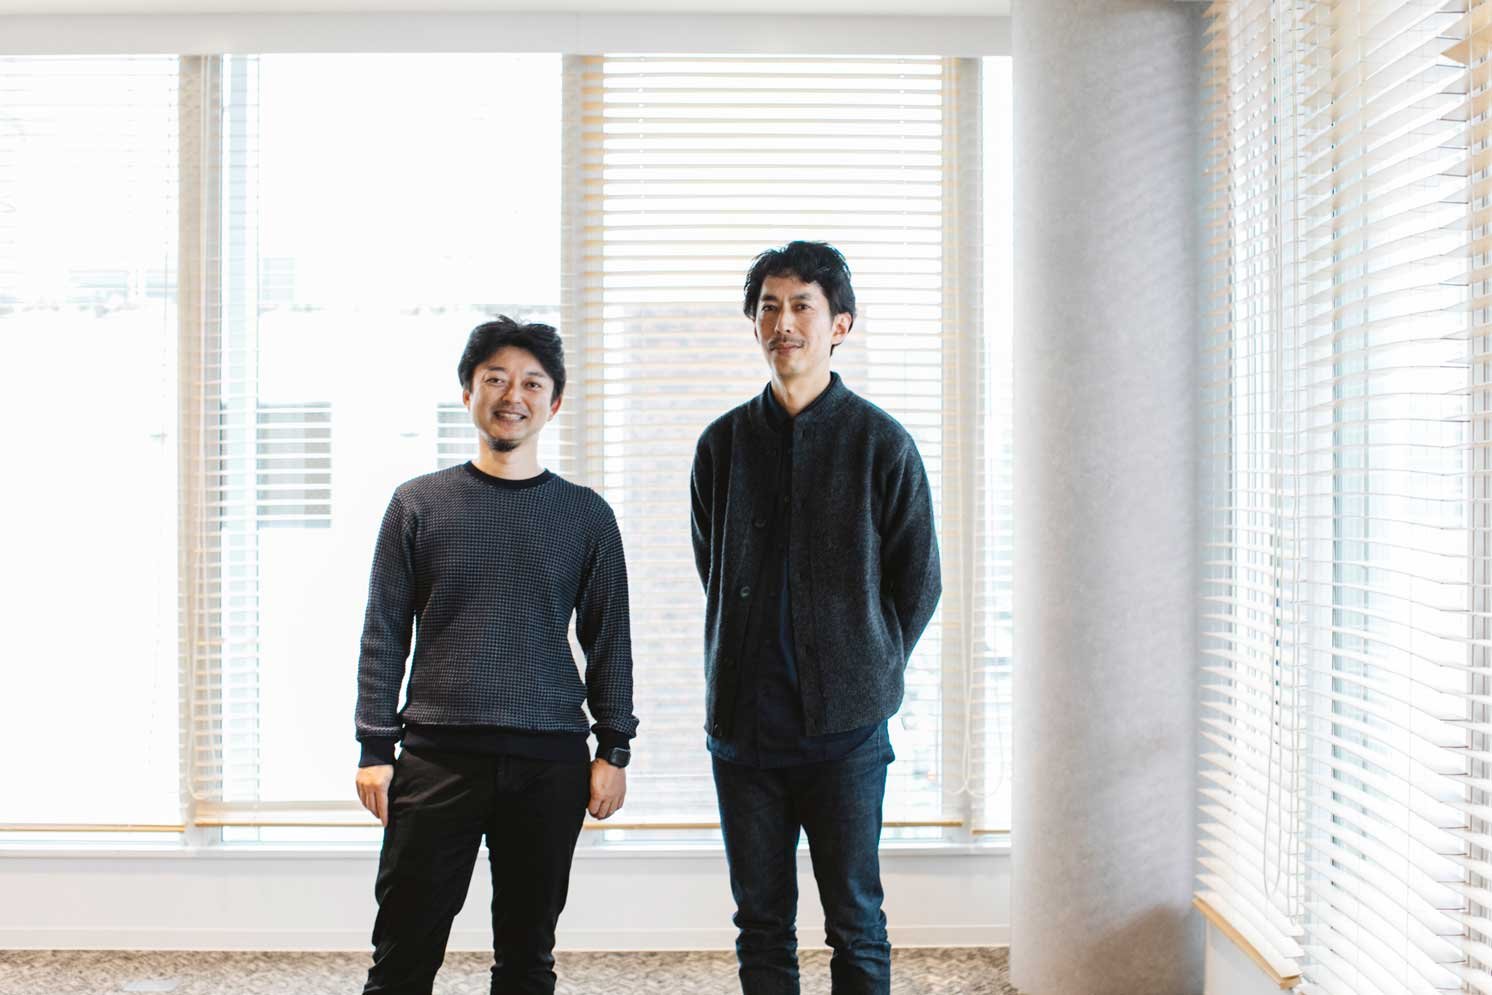 左から岡部氏、中村氏 | Make New Magazine「未来の定番」をつくるために、パナソニックのリアルな姿を伝えるメディア